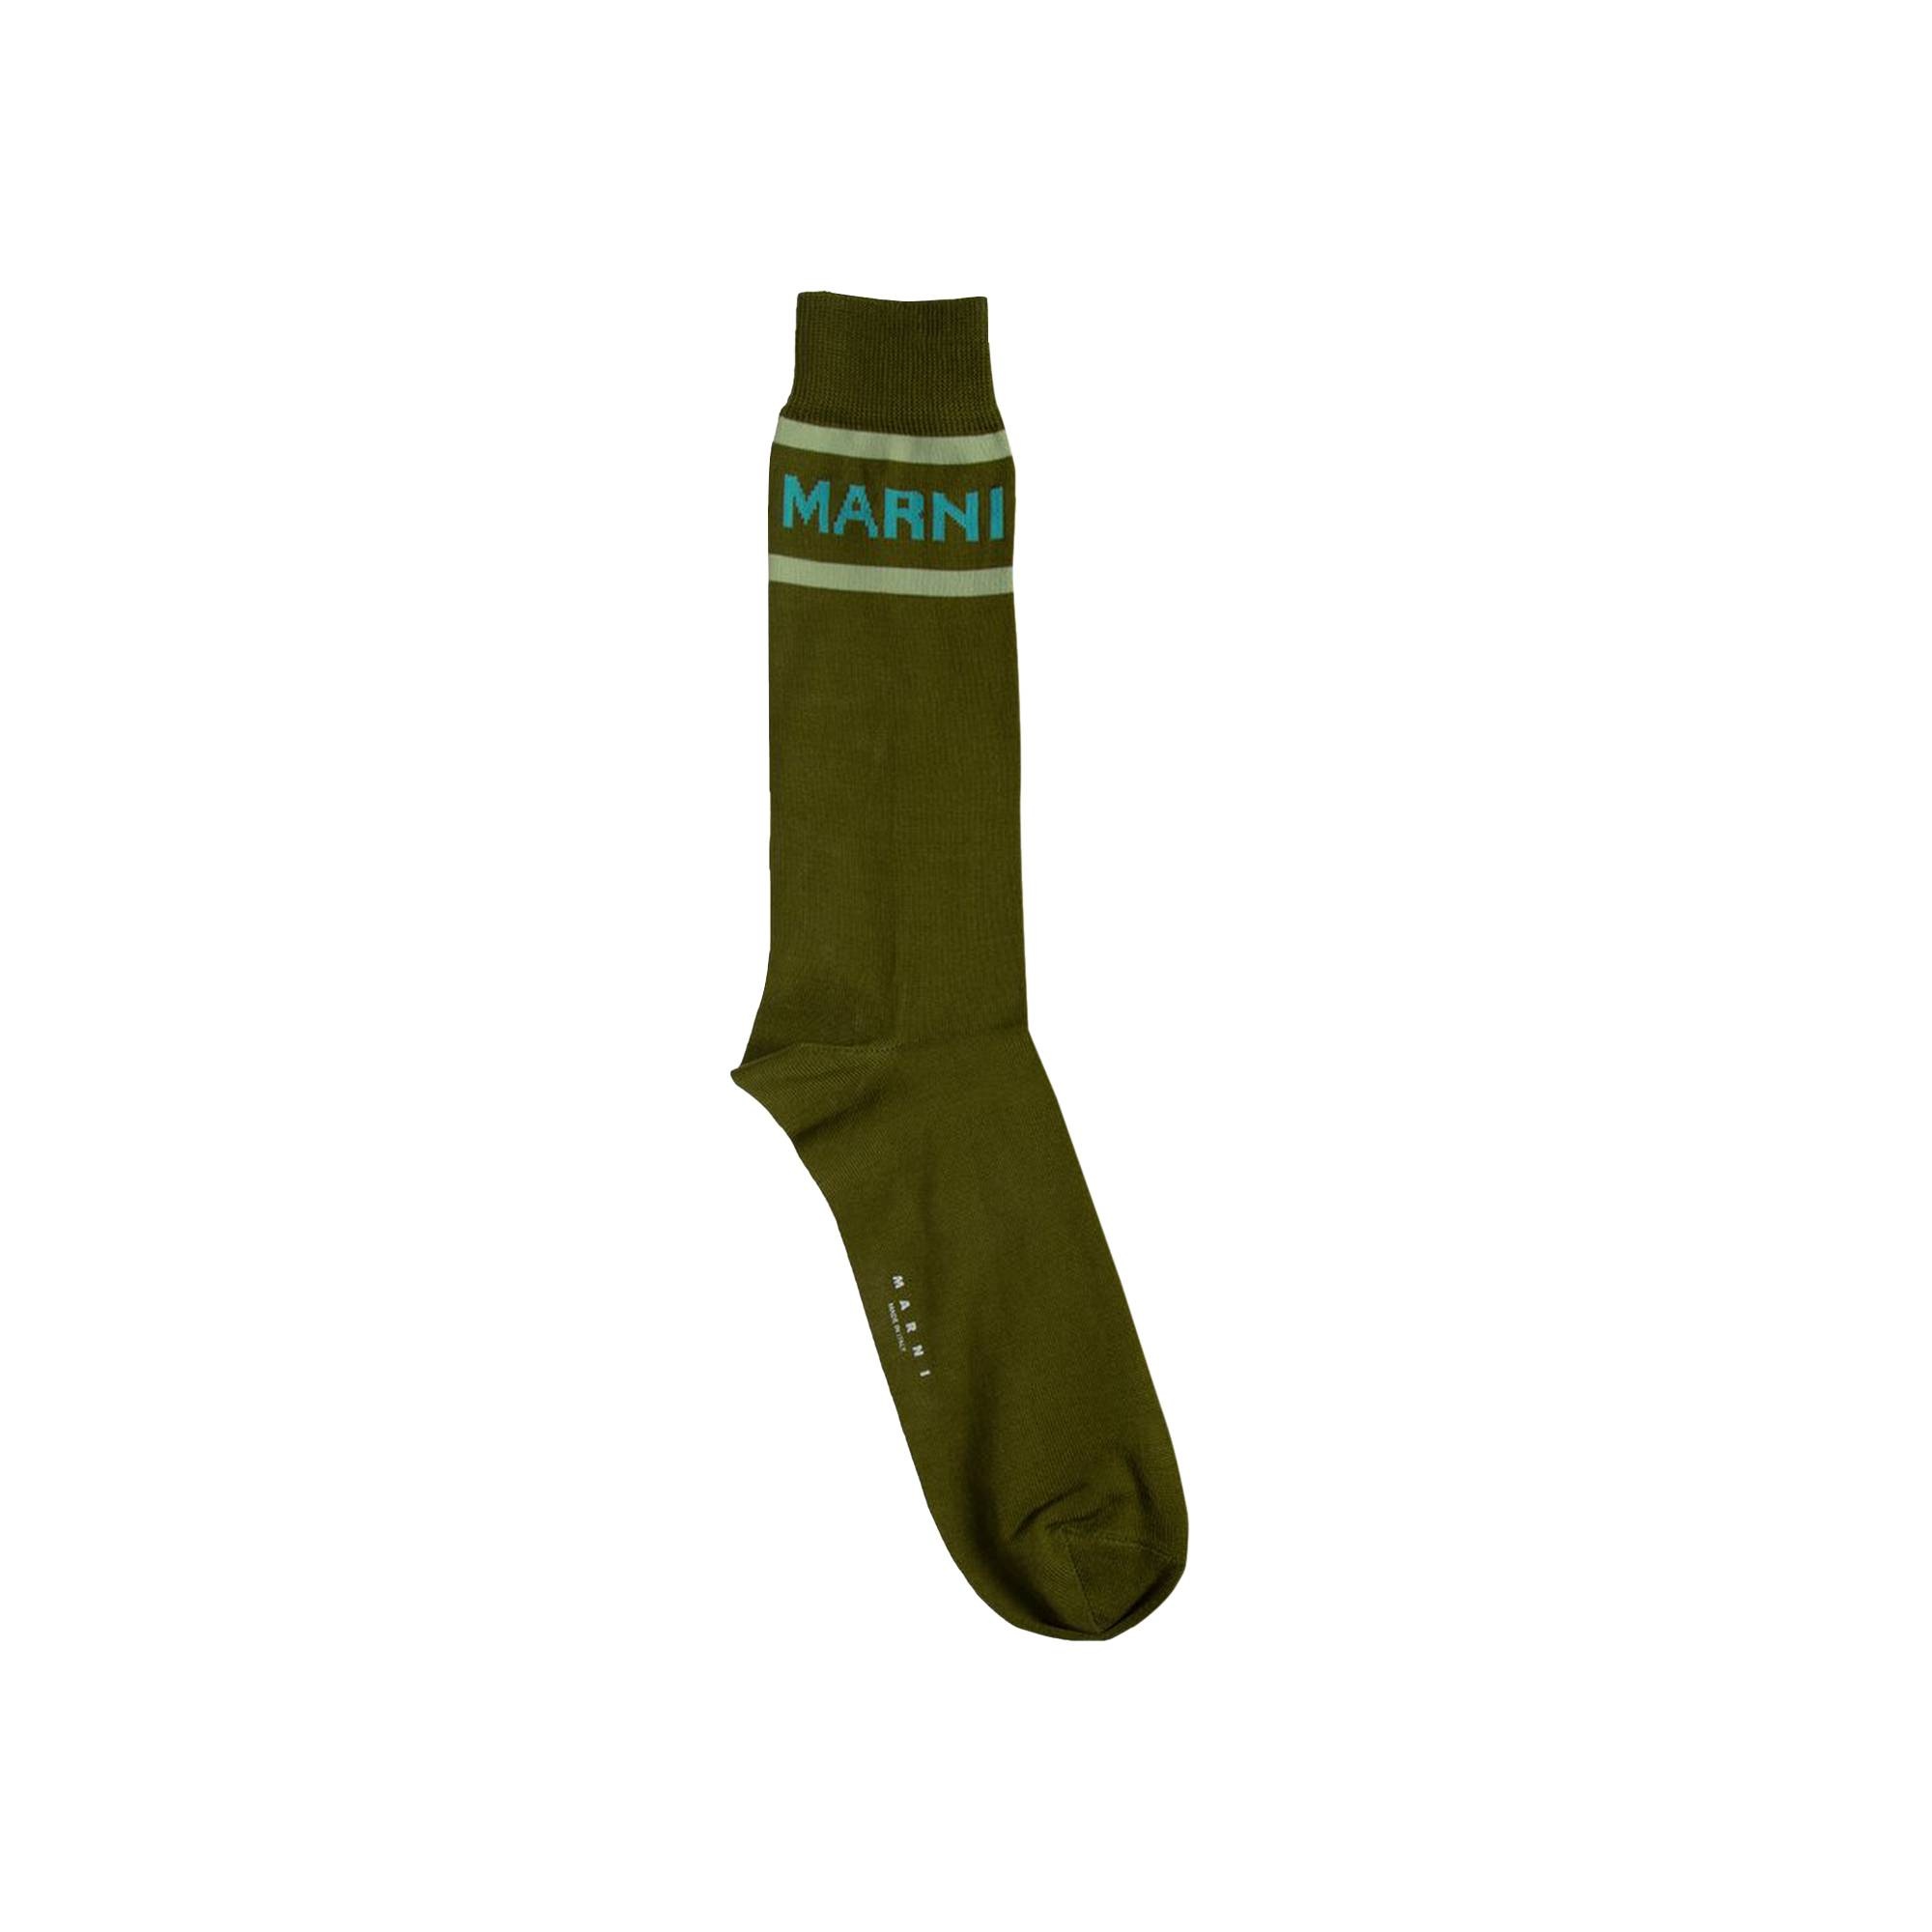 Marni Socks 'Lawn Green' - 1